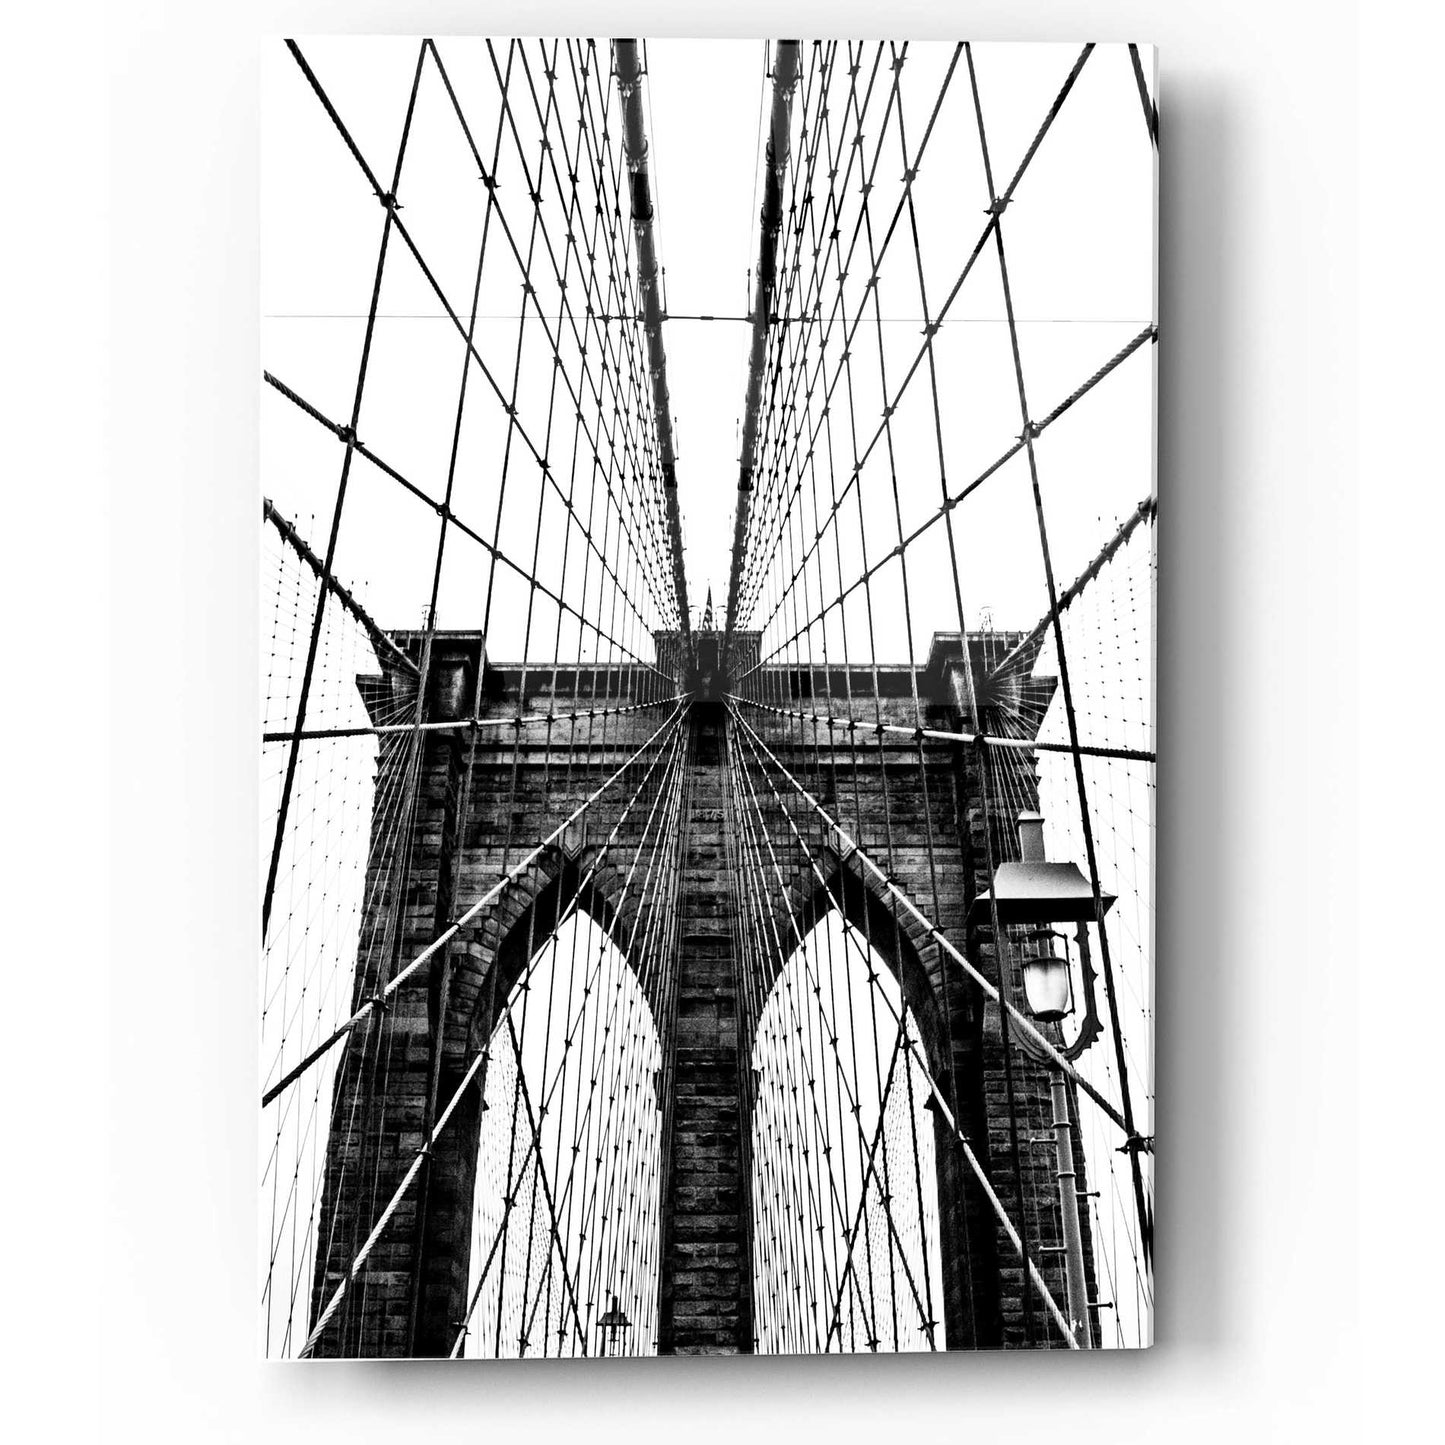 Epic Art 'Brooklyn Bridge Web Vertical' by Nicklas Gustafsson Acrylic Glass Wall Art,12x16